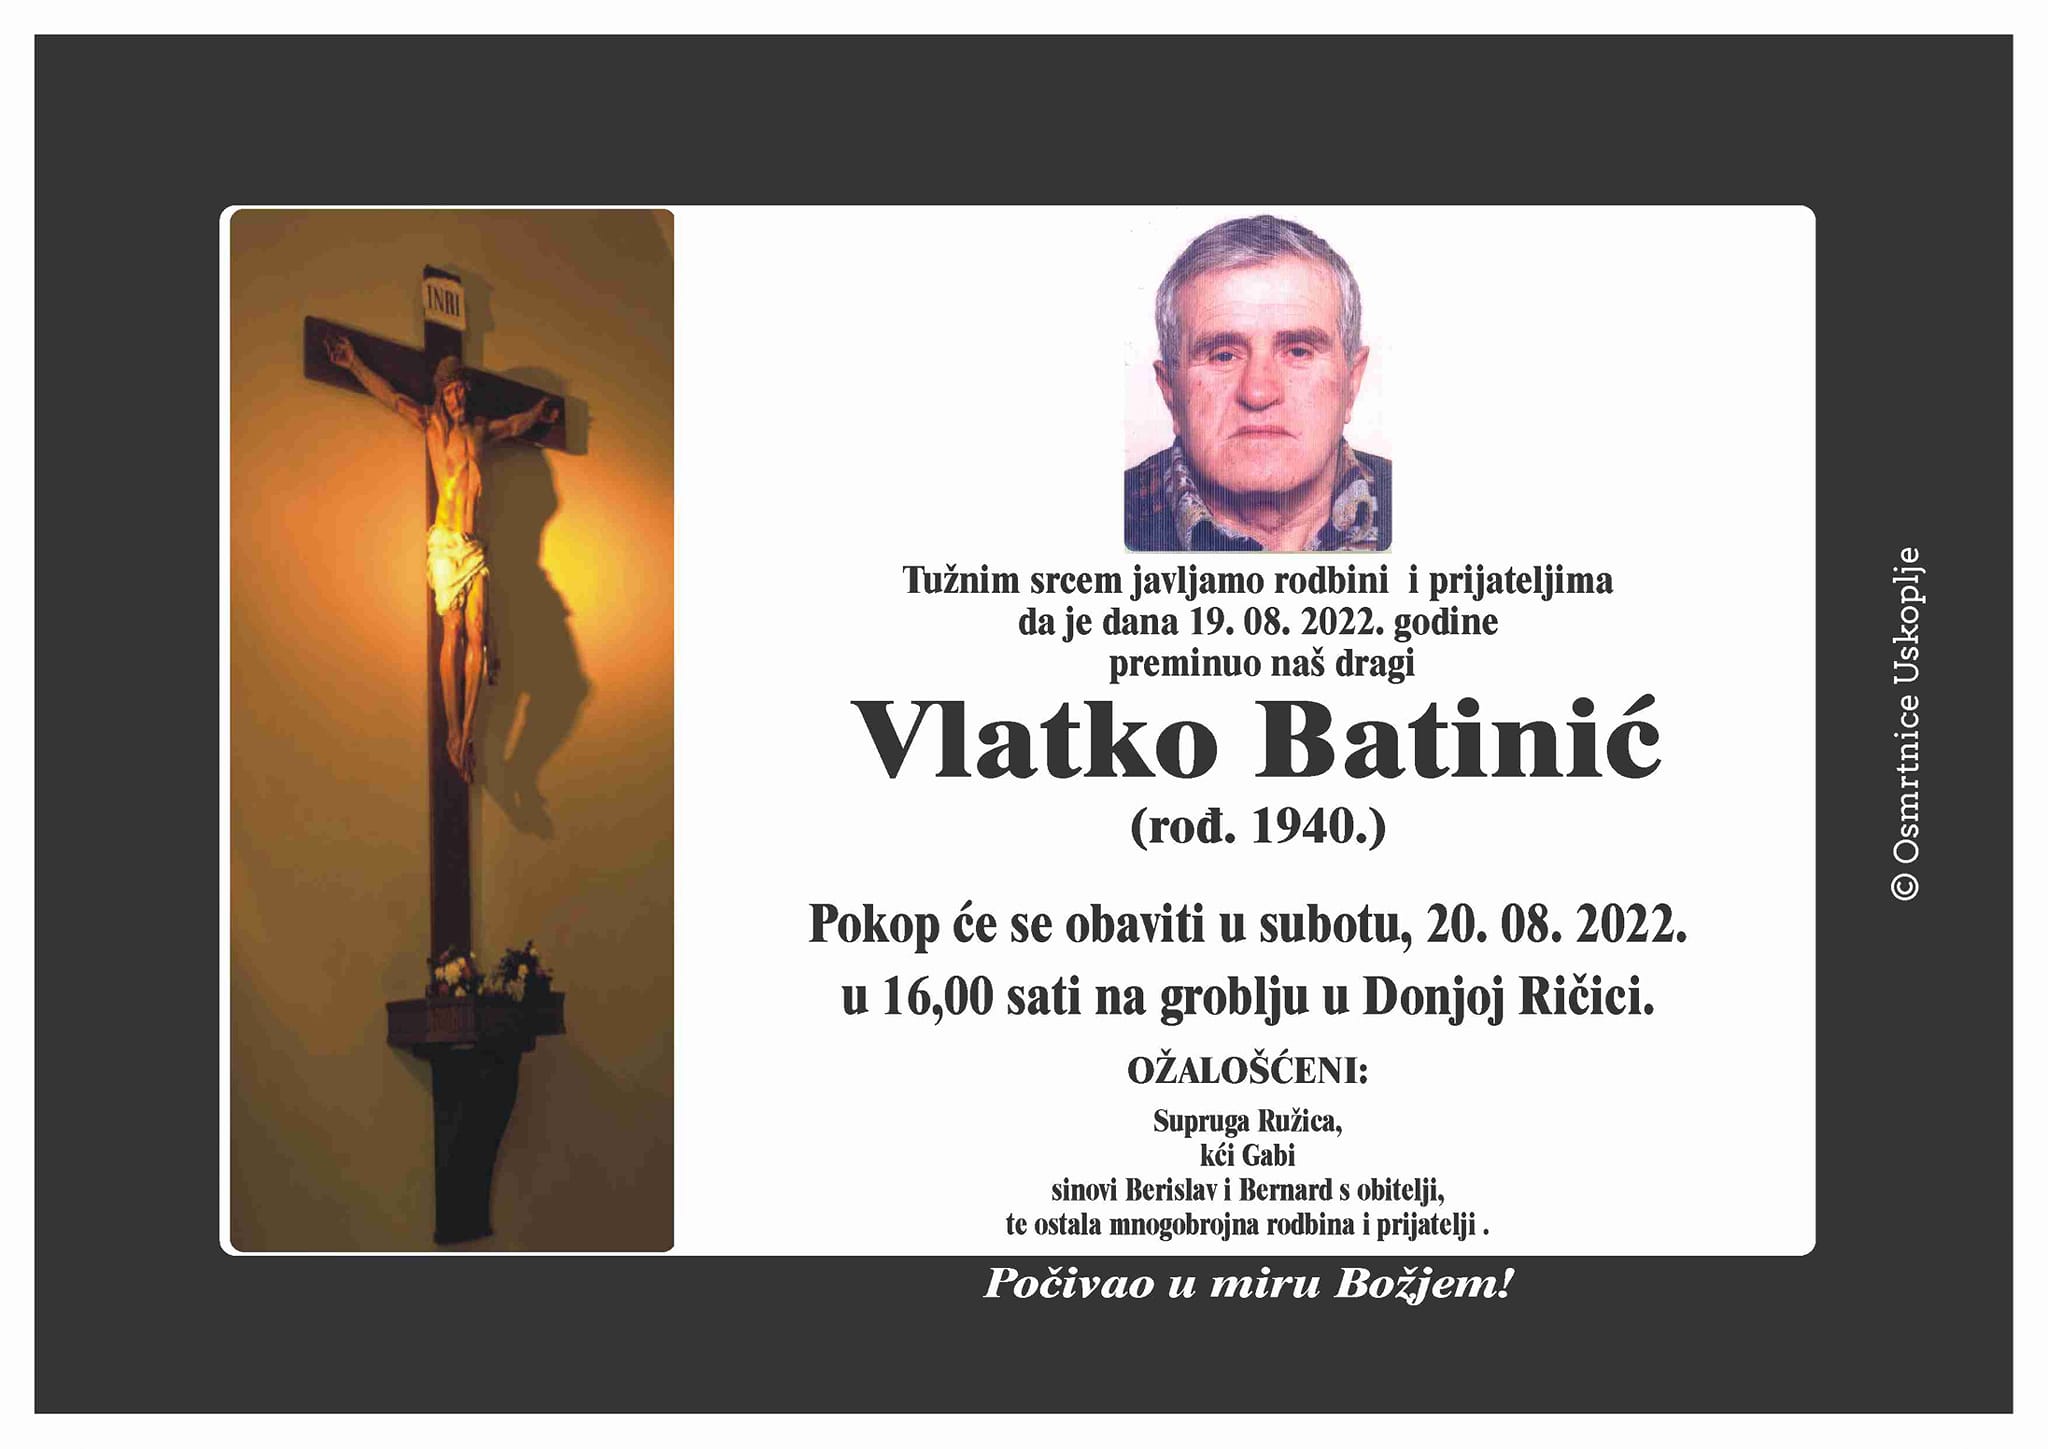 Vlatko Batinić